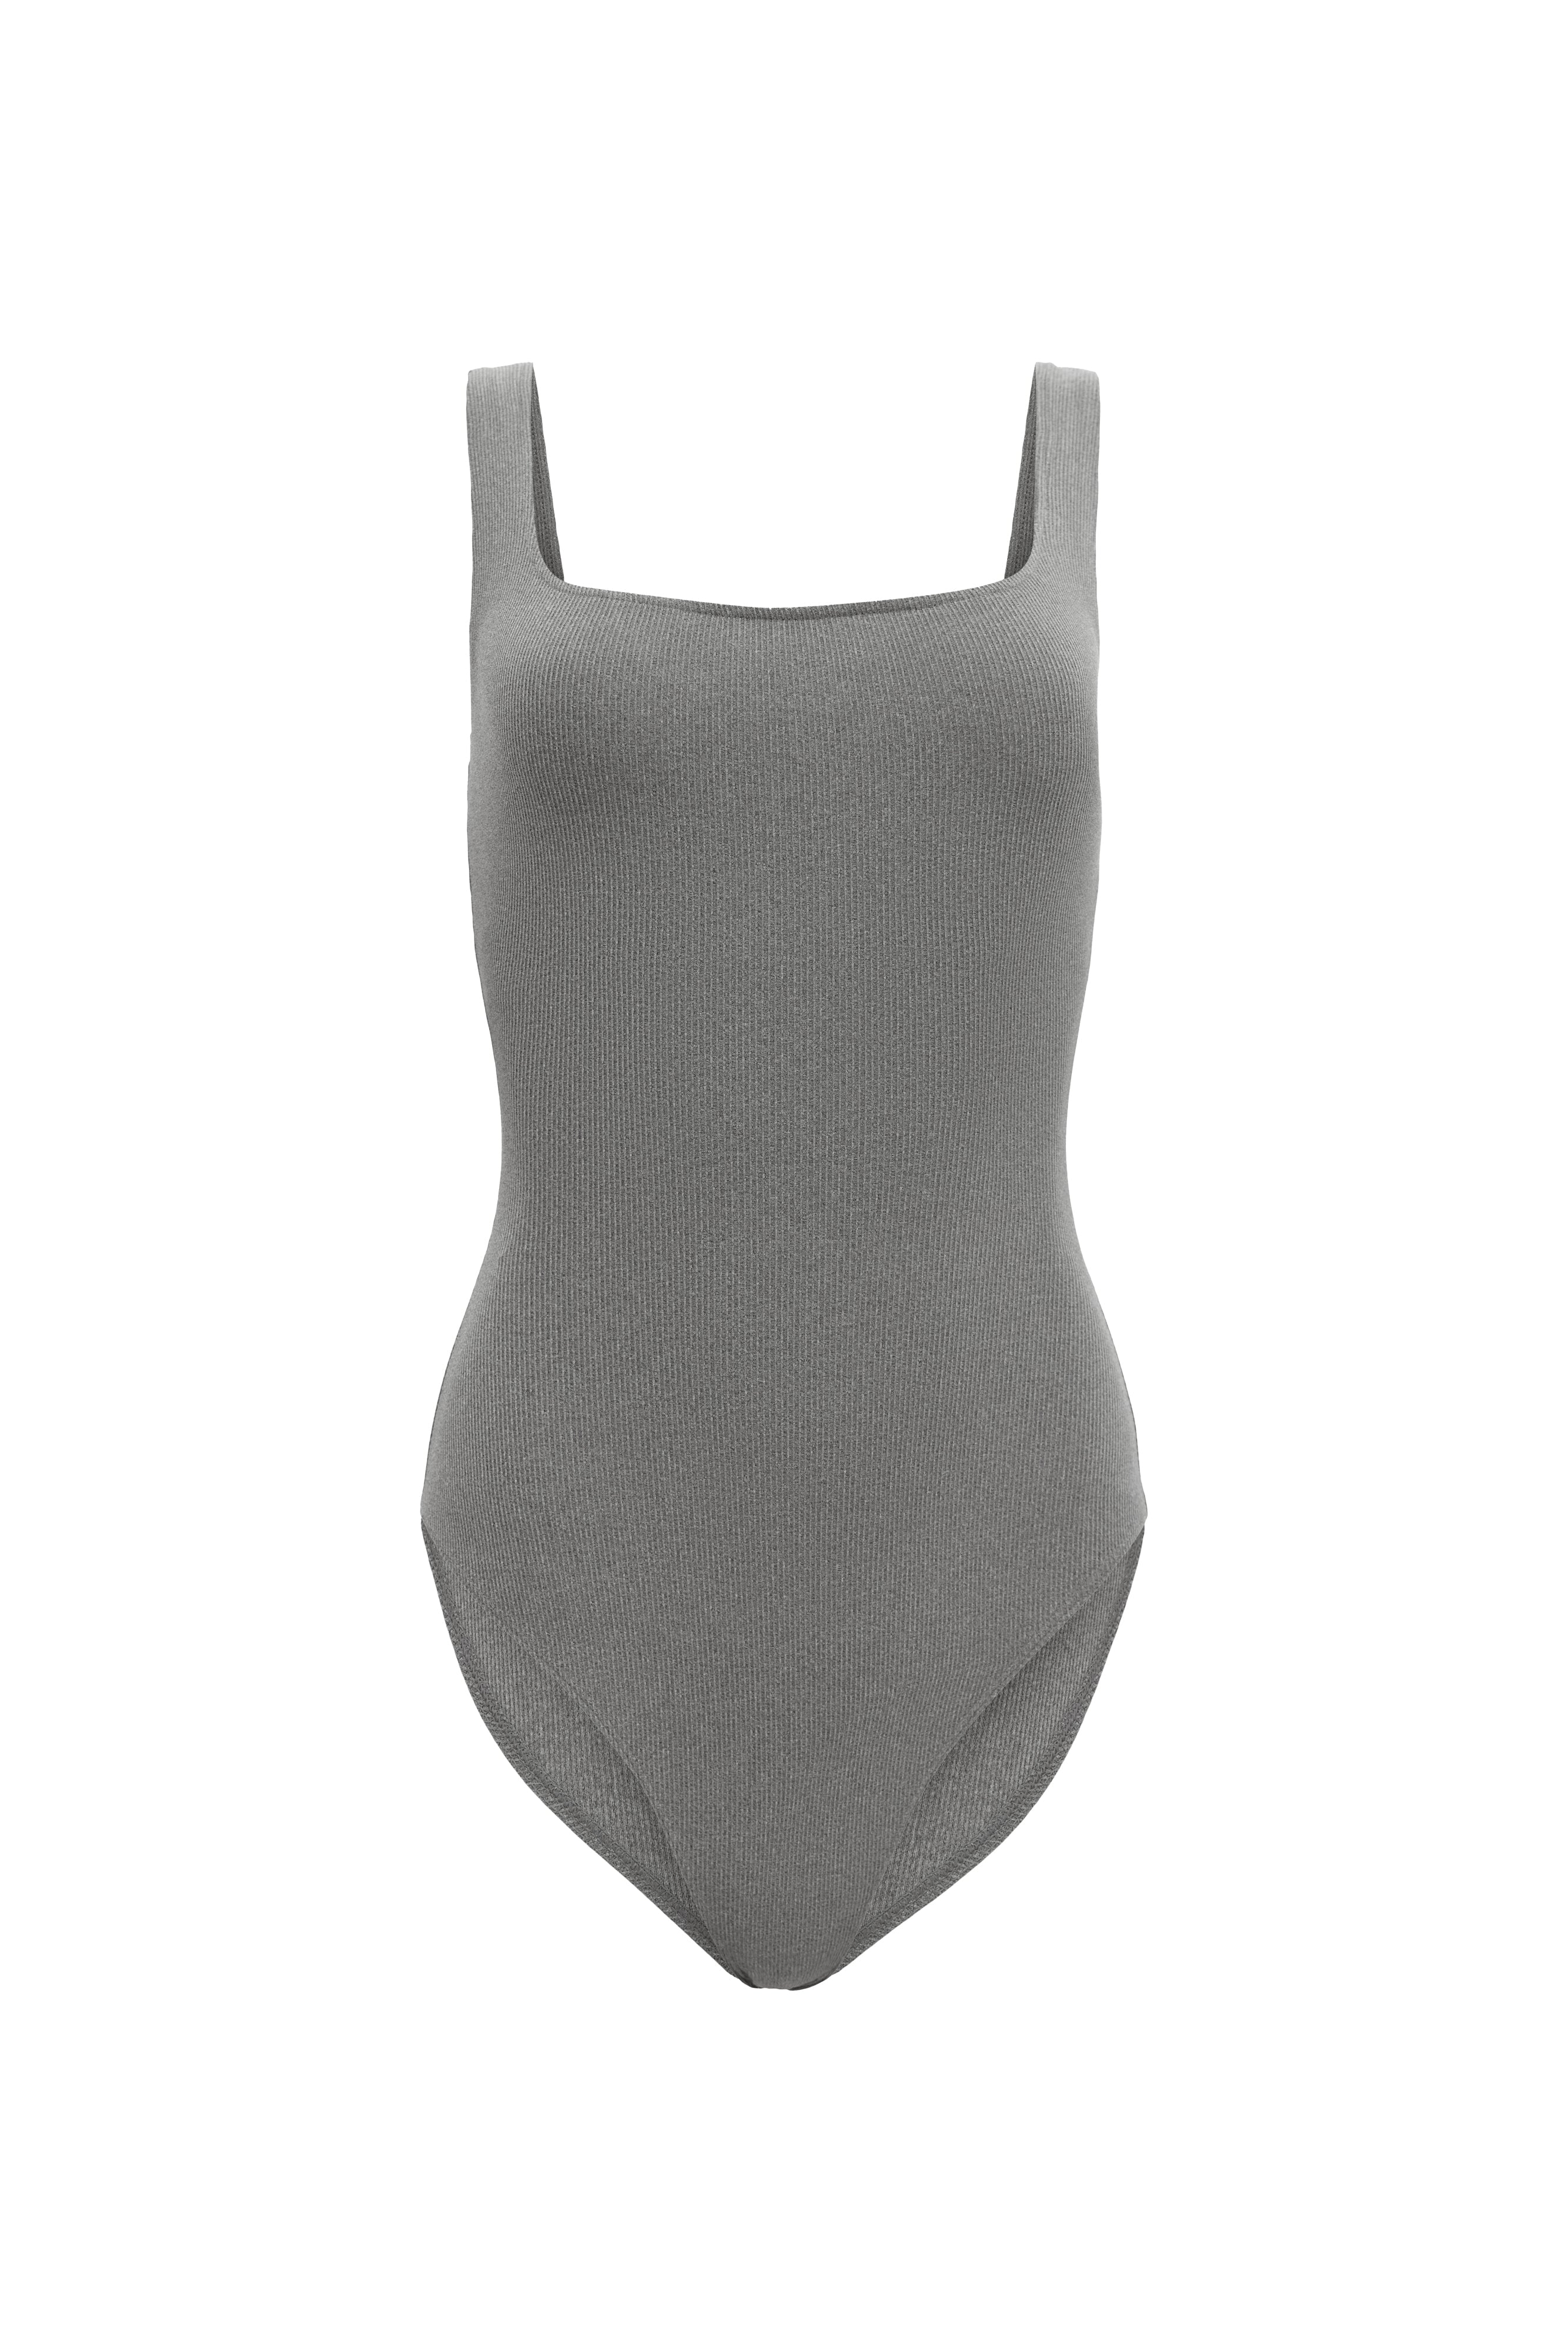 Pearl Grey Mid Thigh Shapewear Bodysuit – CHELIA